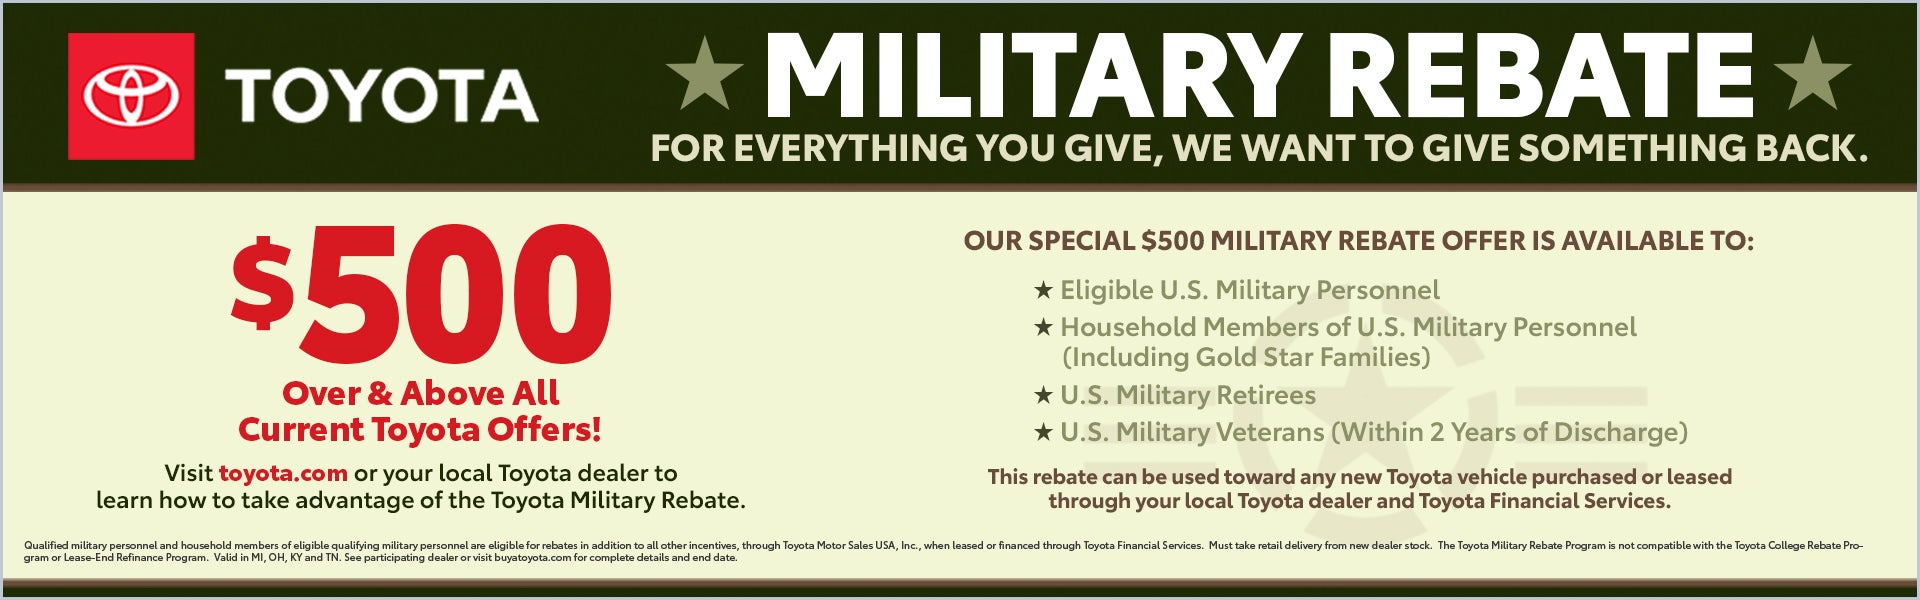 $500 Military Rebate Offer